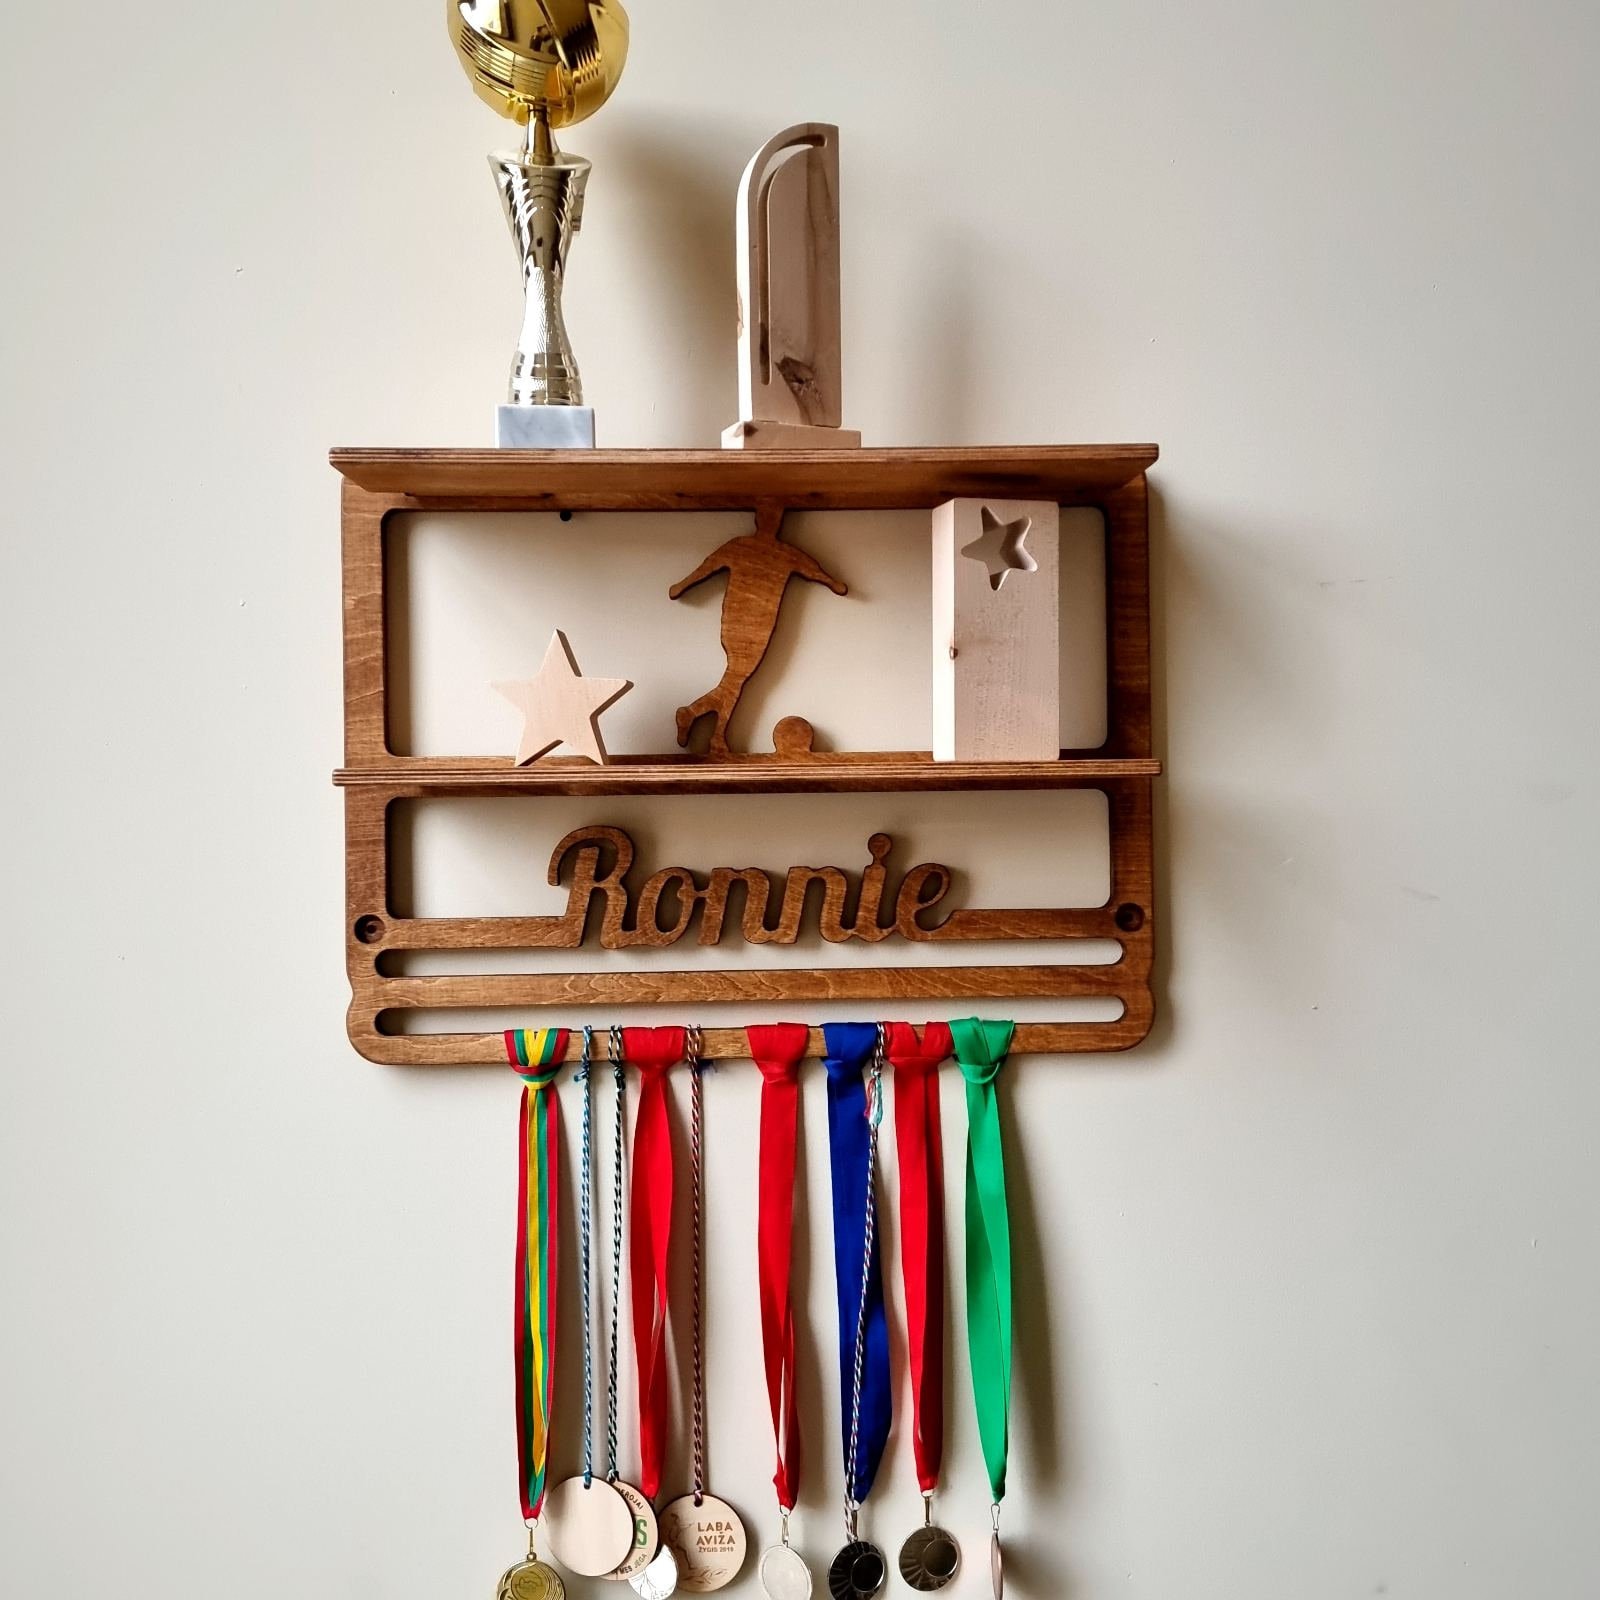 SUPERDANT Medallero Colgador de medallas Portador de Medallas Soporte de  Exhibición Montaje En Pared Colgador Decoración Porta Medallas Corredores  Medallista Regalos para Deportistas : : Deportes y aire libre